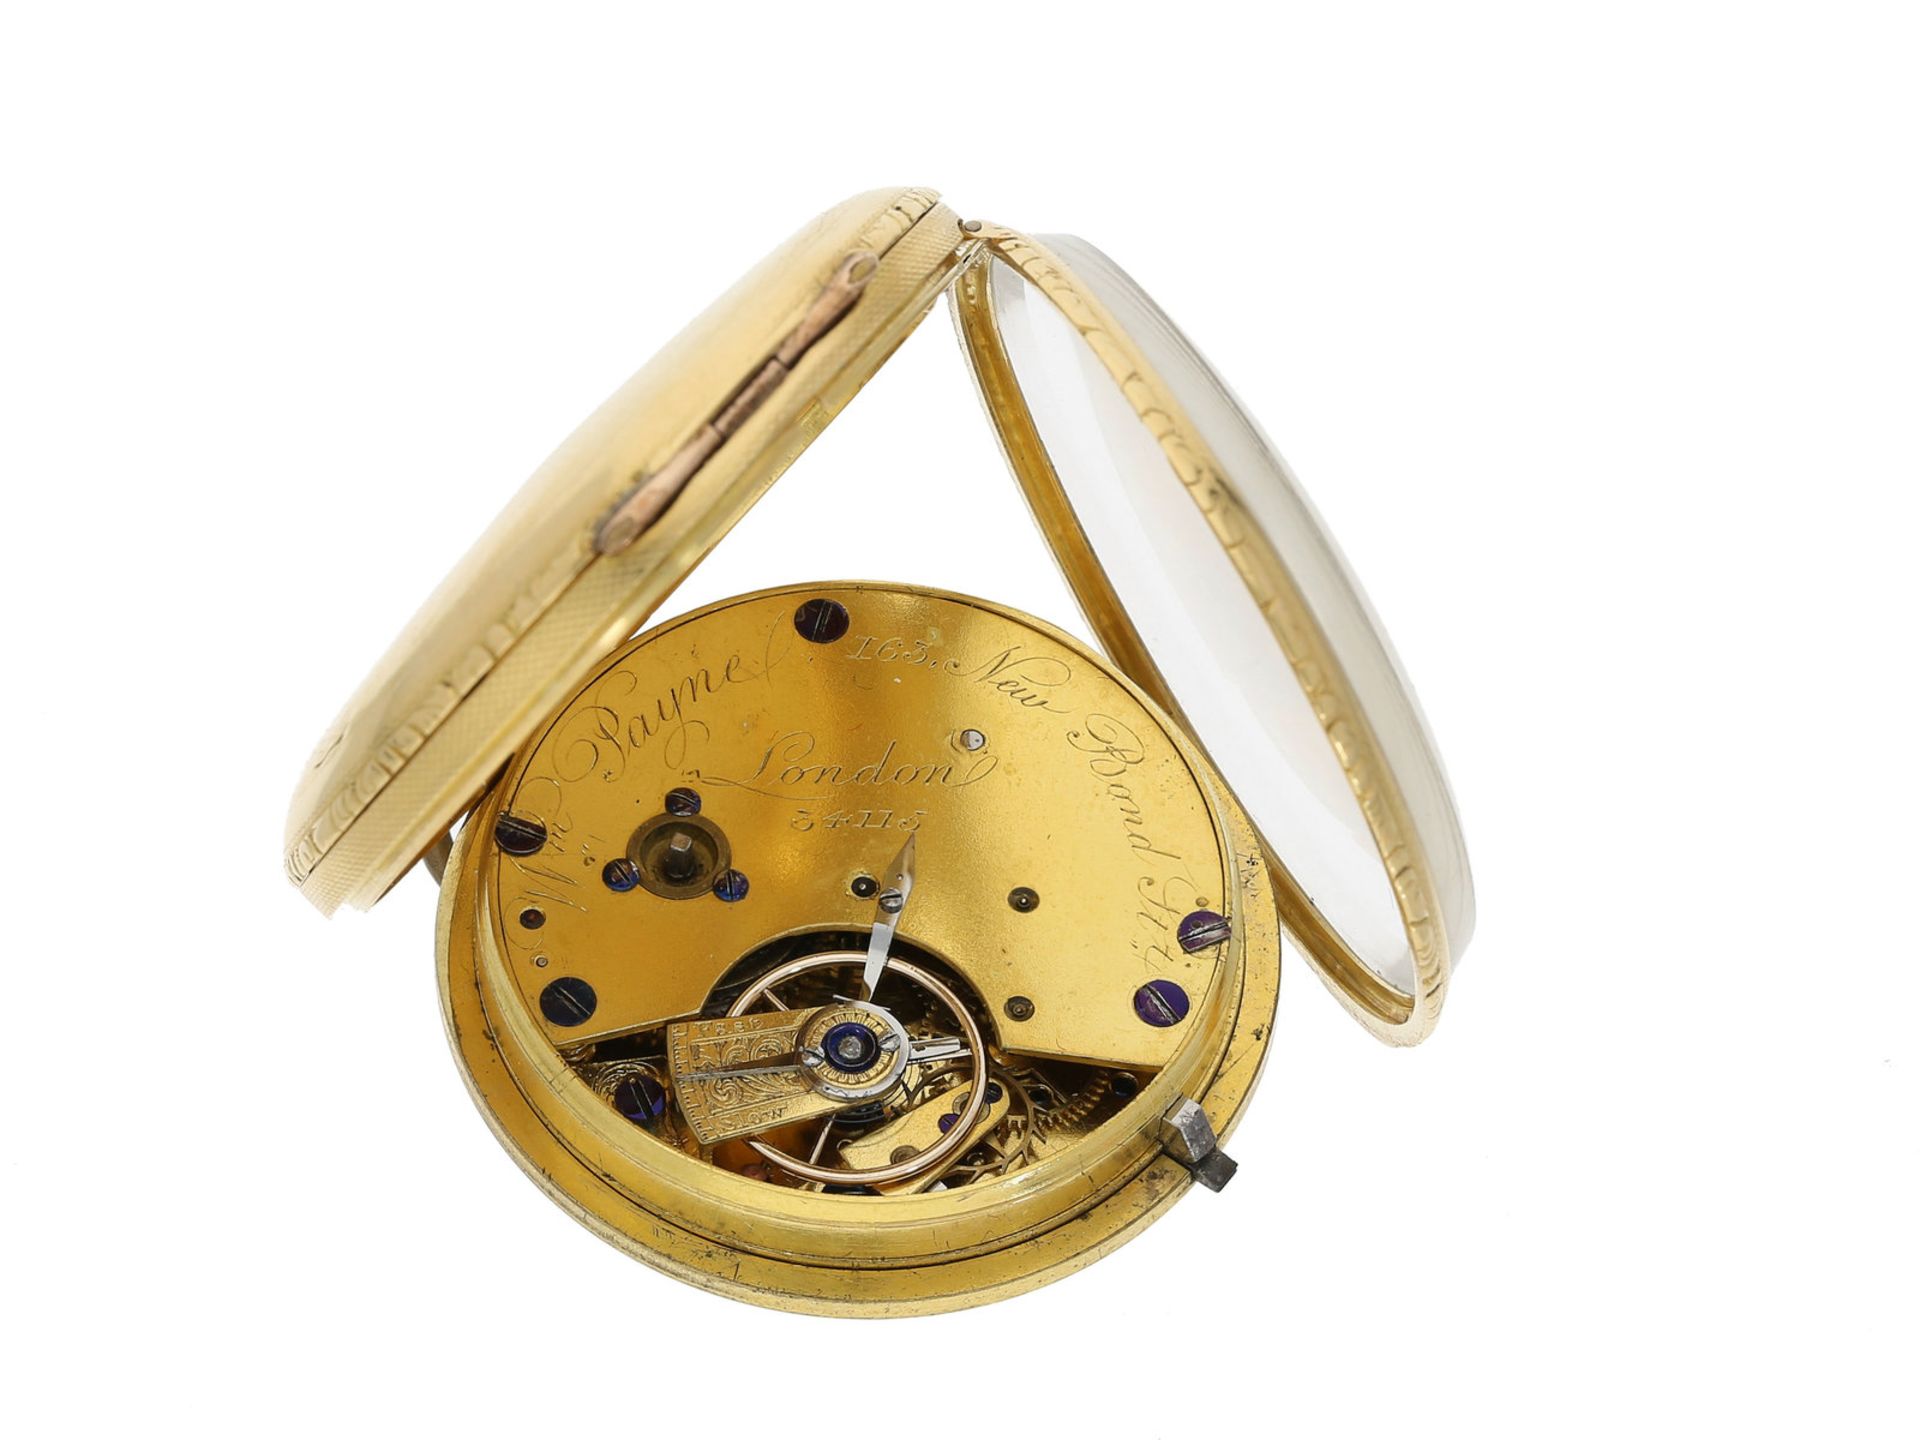 Taschenuhr: frühe englische Taschenuhr, um 1830, 18K Gold, signiert William Payne London No. 341 - Bild 3 aus 3